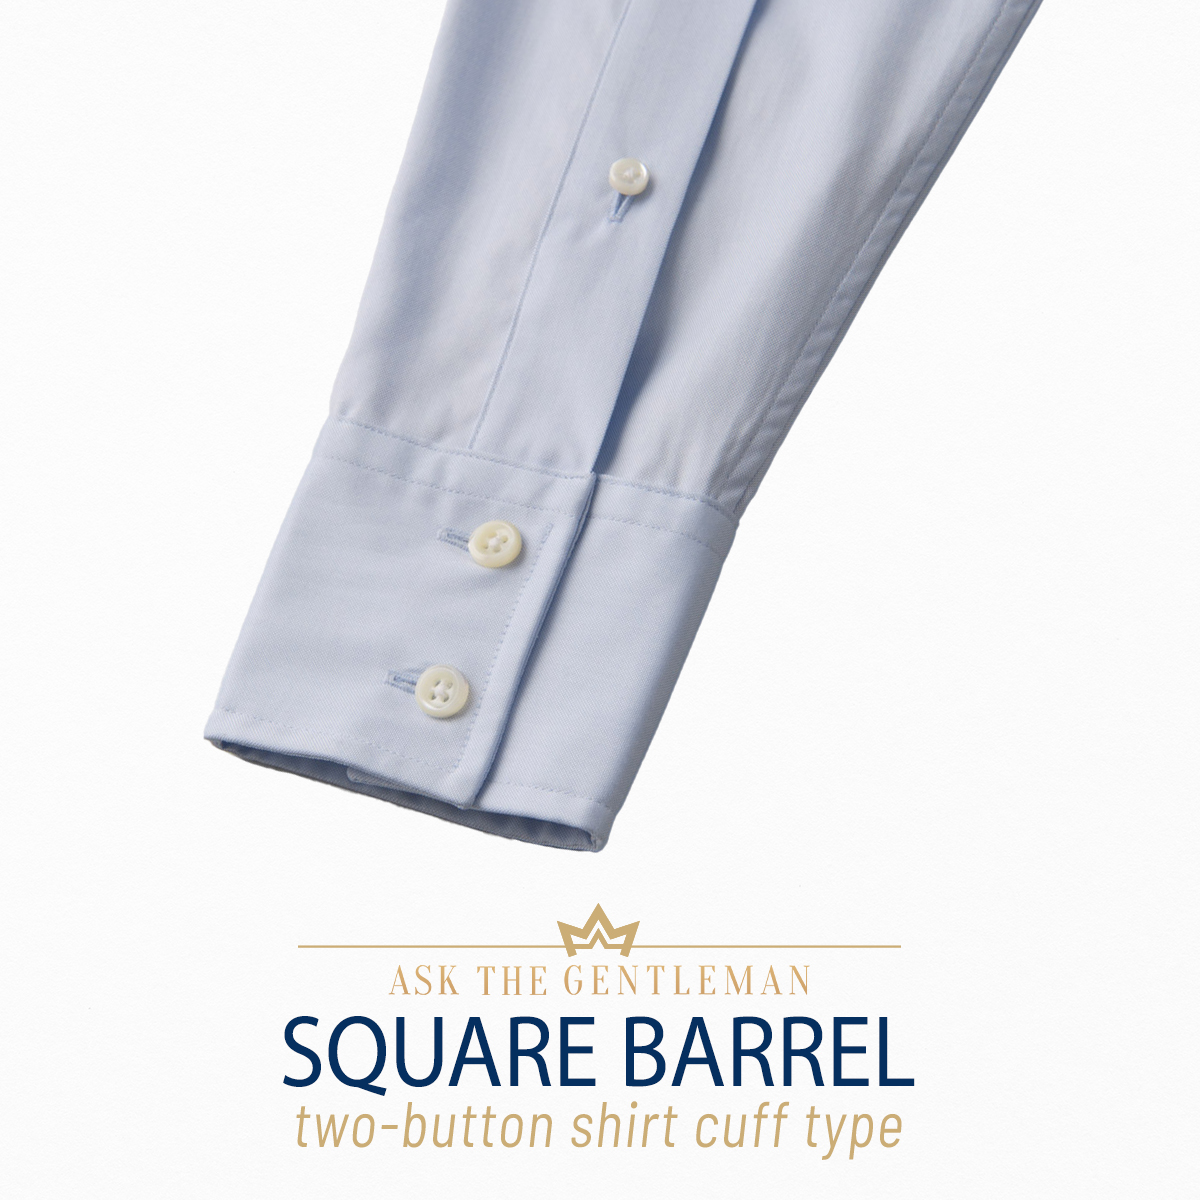 Two-button square barrel shirt cuff